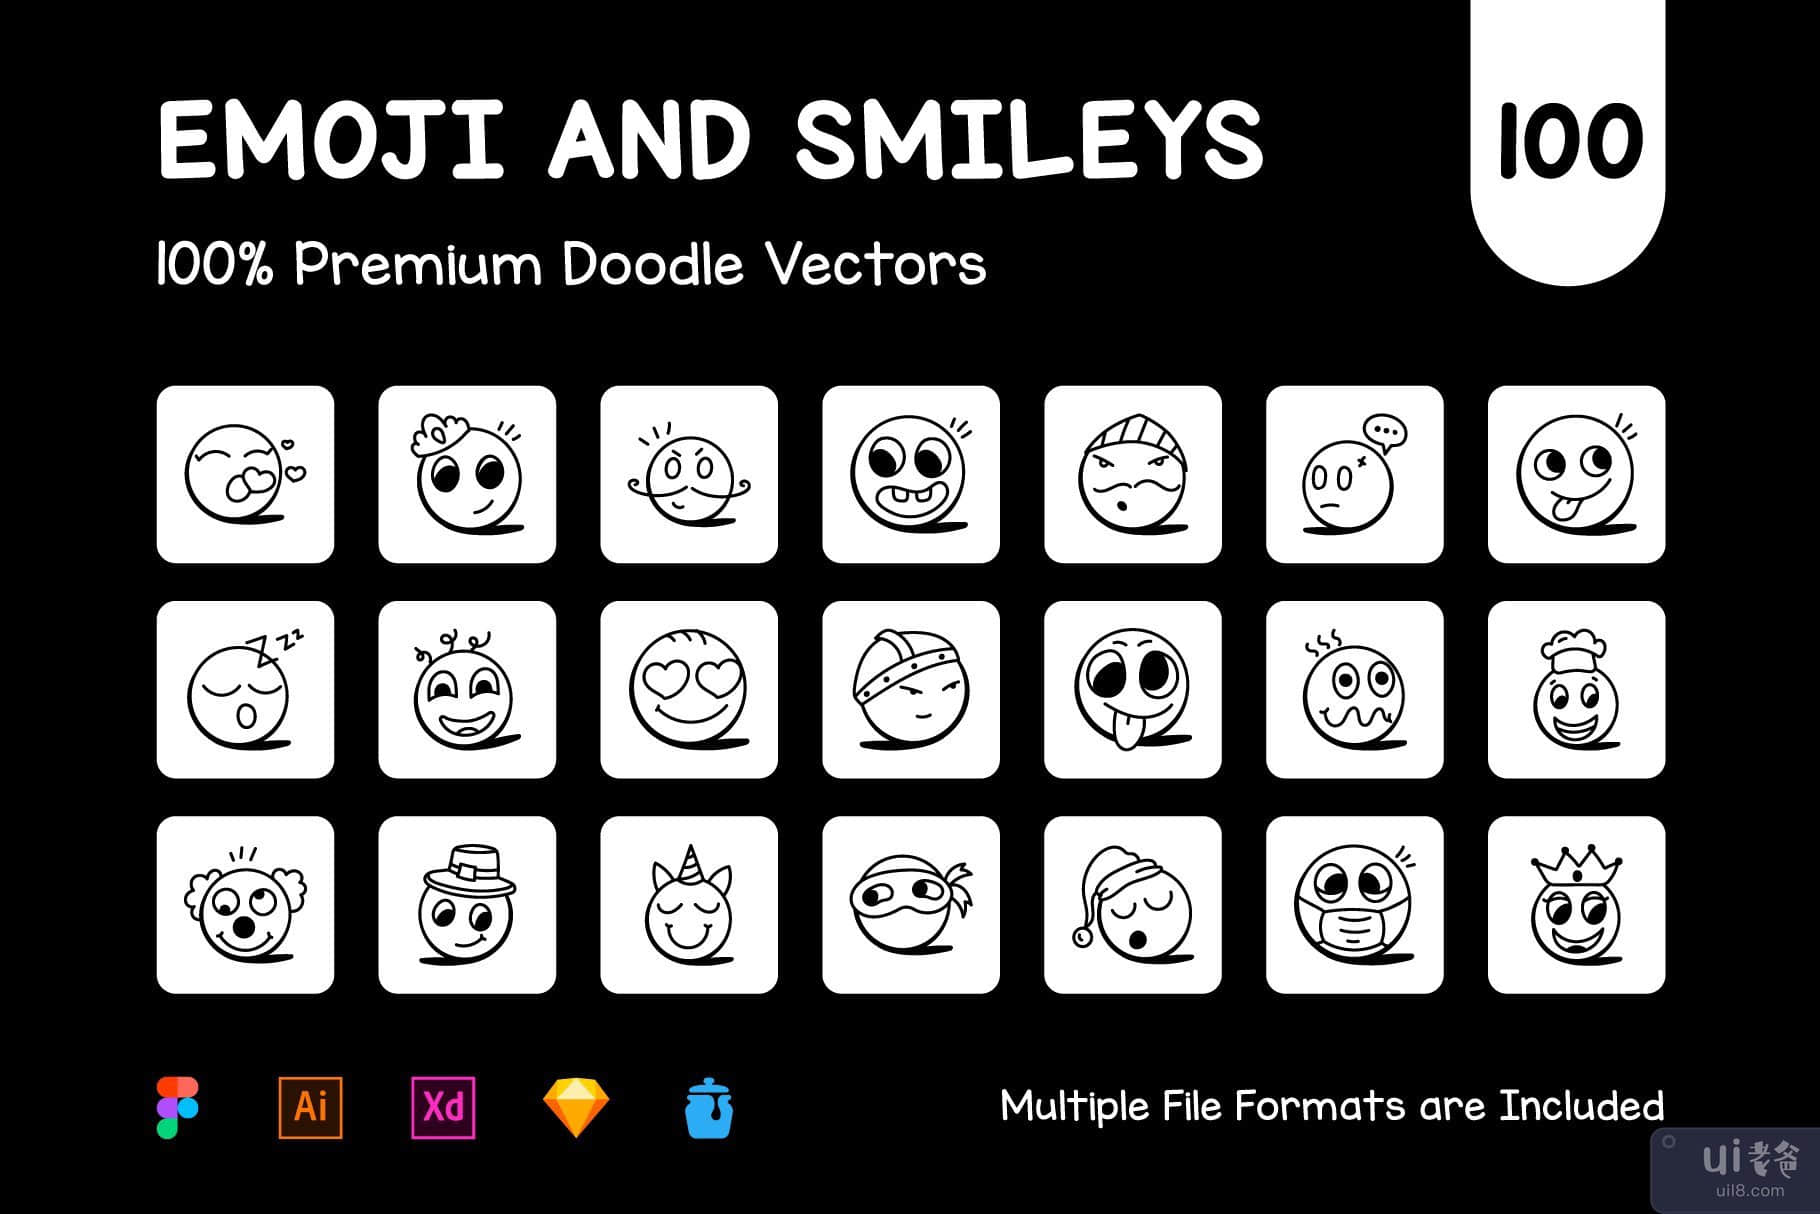 笑脸和表情符号图标的集合(Collection of Smileys and Emoji Icons)插图1